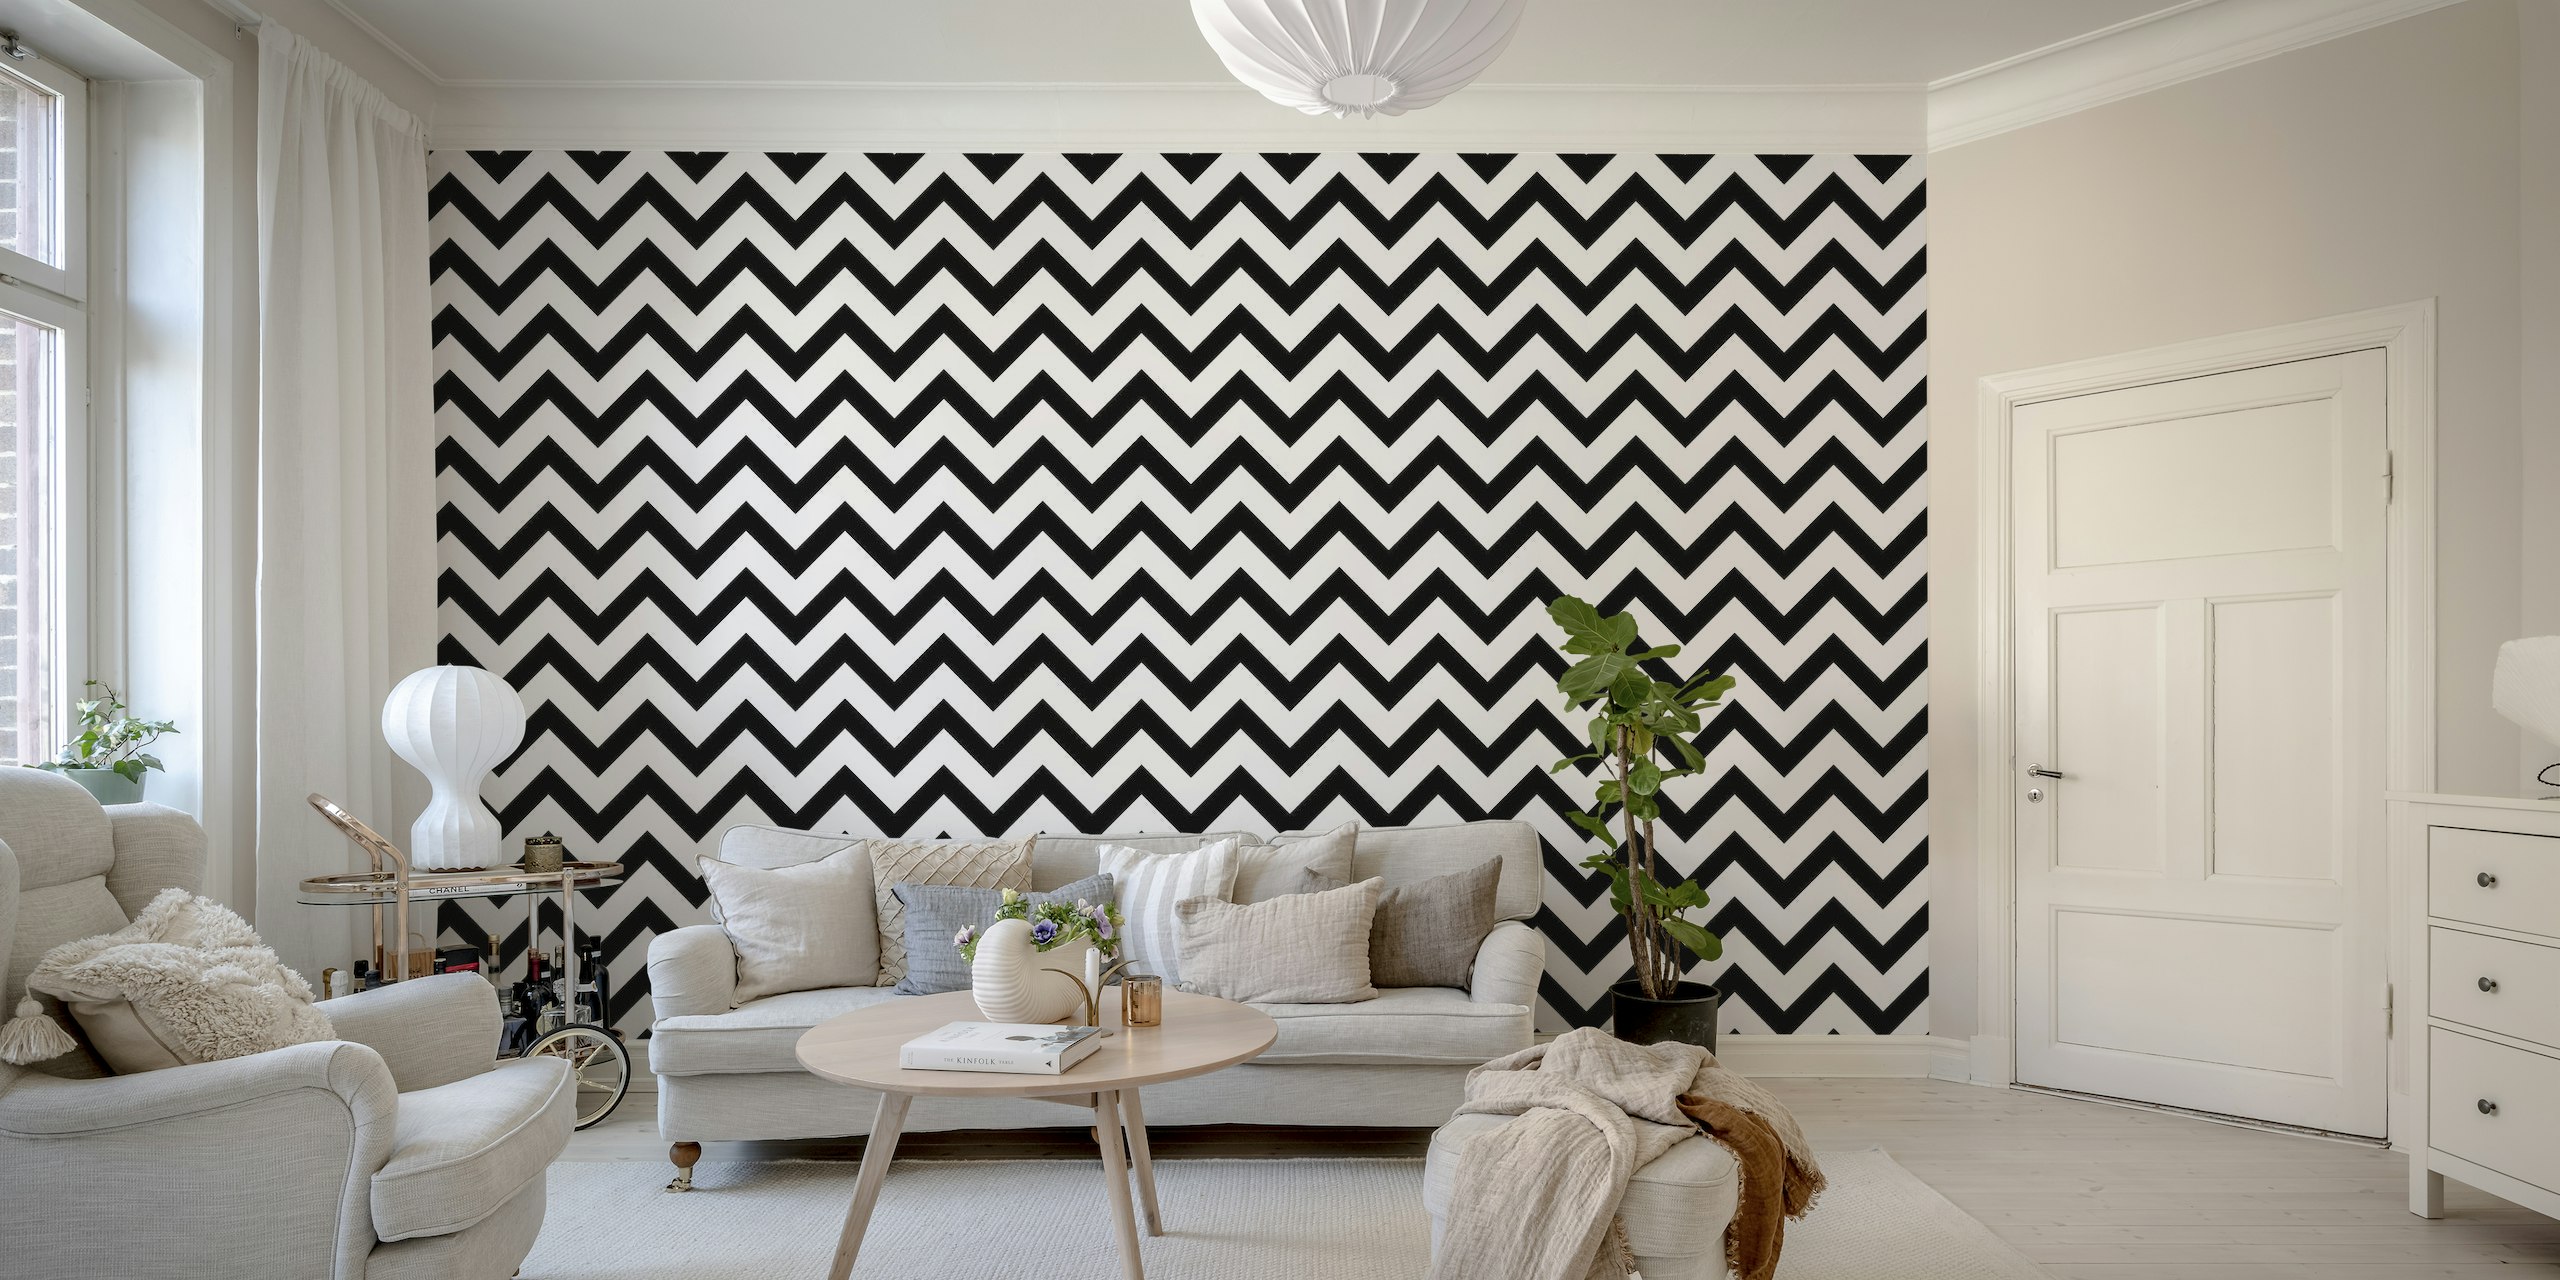 Zwart-witte chevron-patroon muurschildering